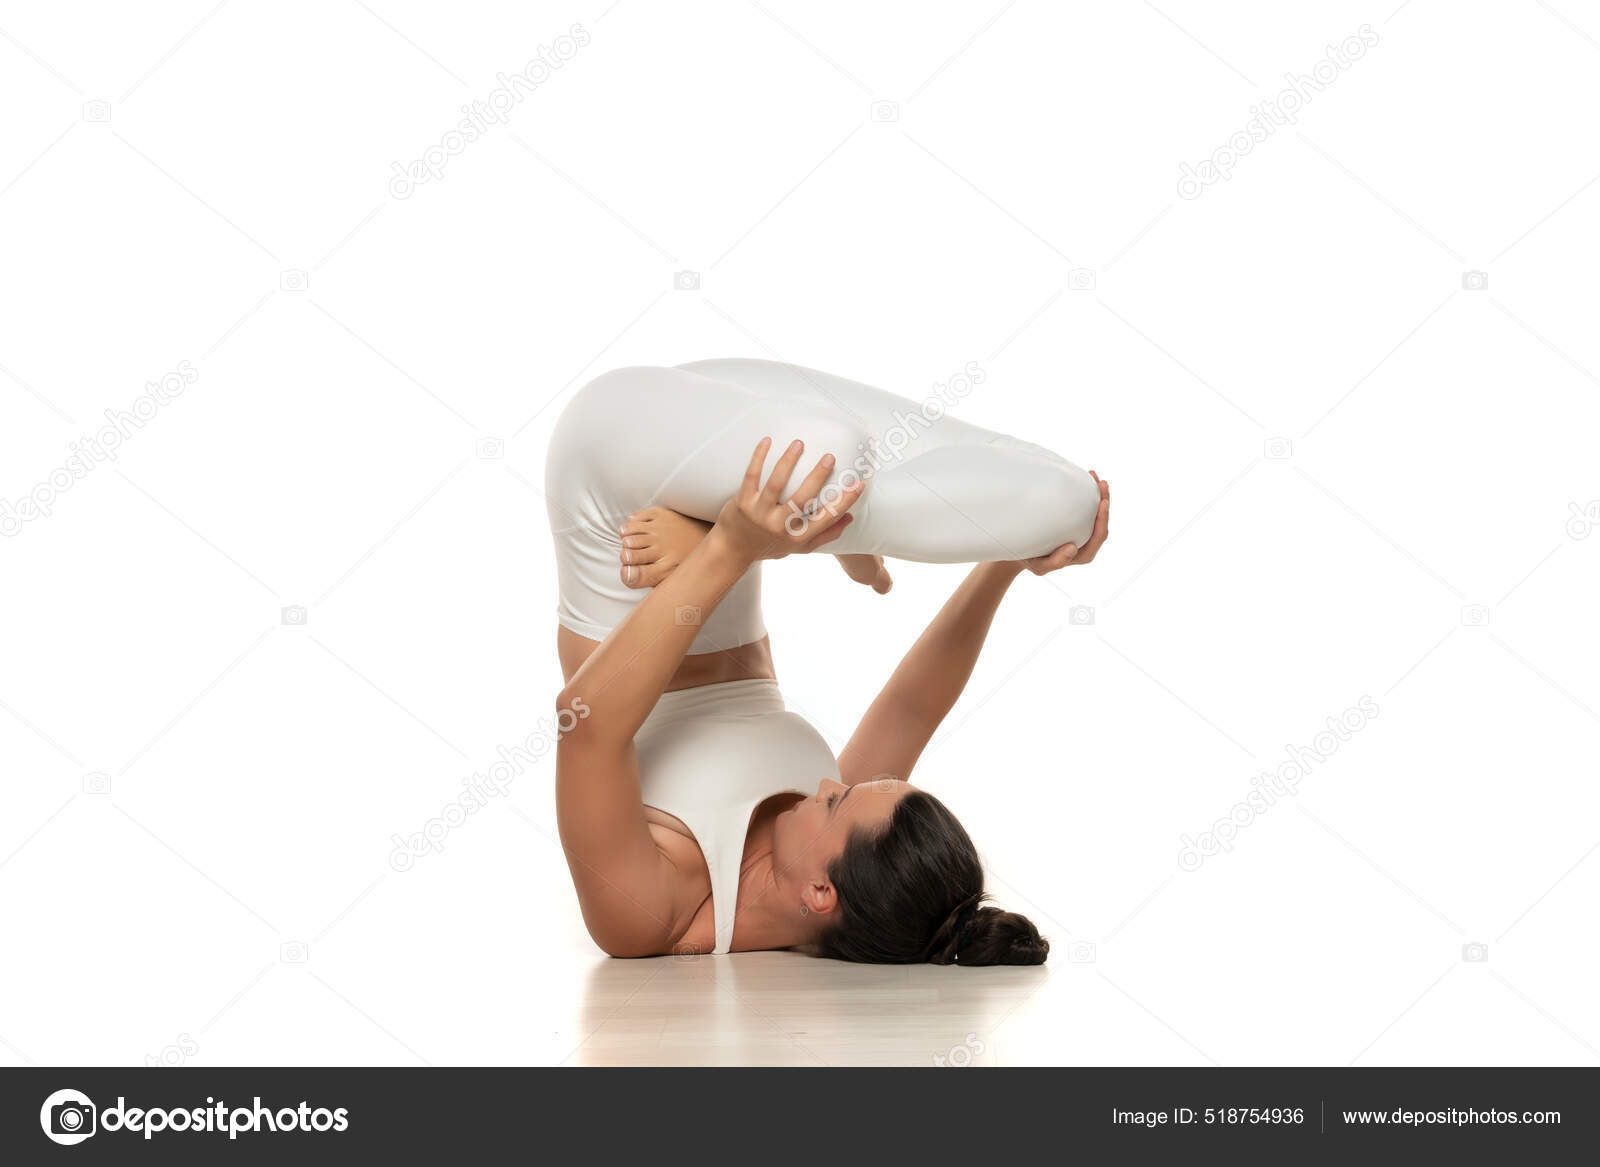 Yoga Deporte Entrenamiento Vida Mujer Joven Deportiva Blanca: fotografía de stock © VGeorgiev Depositphotos